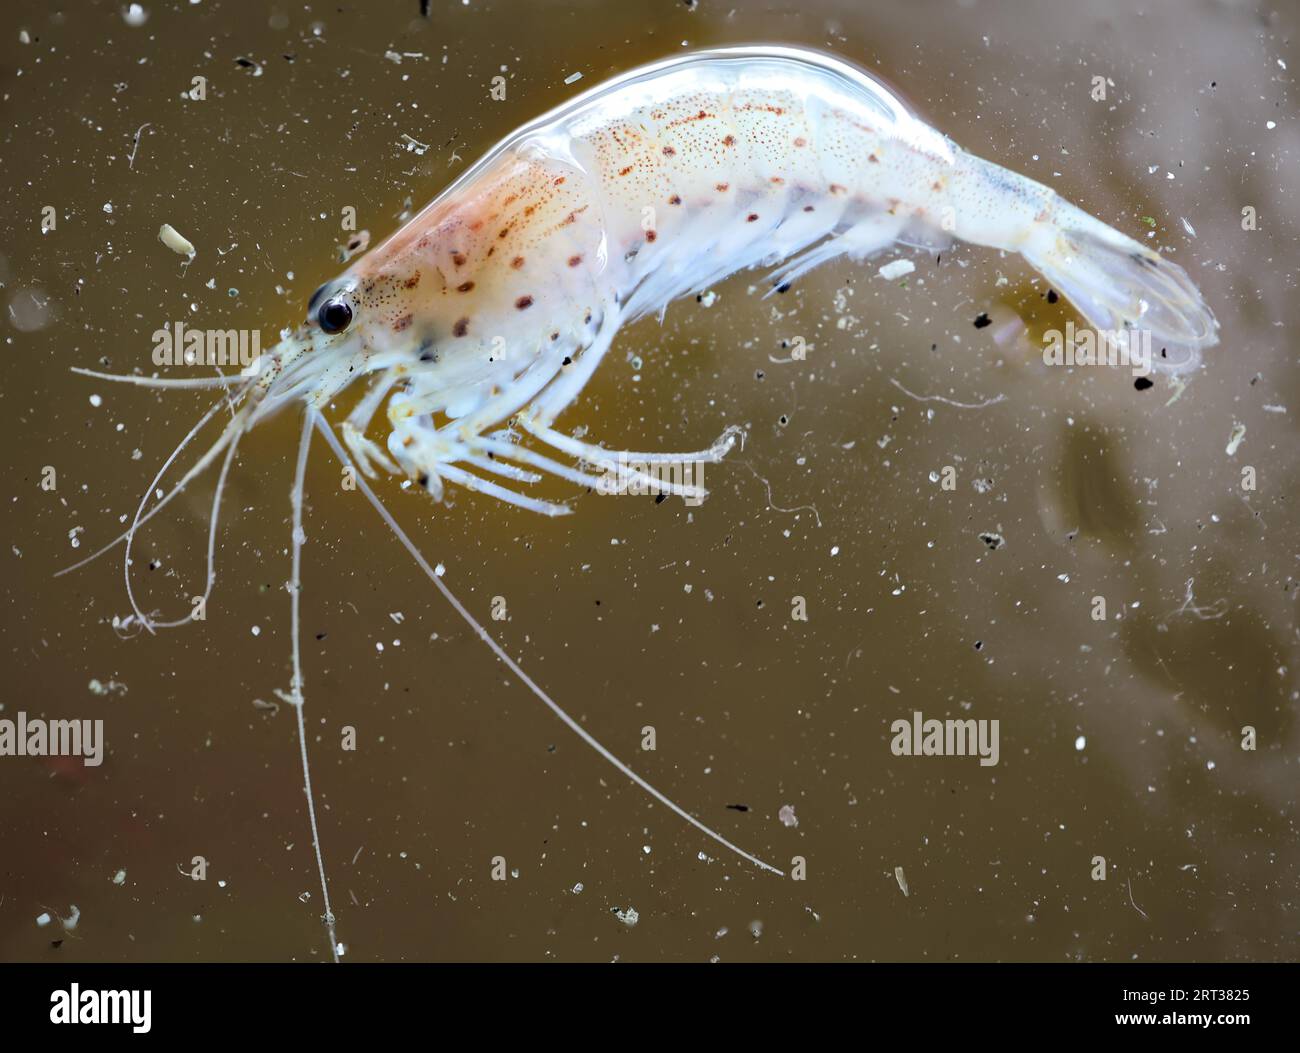 Close-up of an Amano shrimp in an aquarium Stock Photo